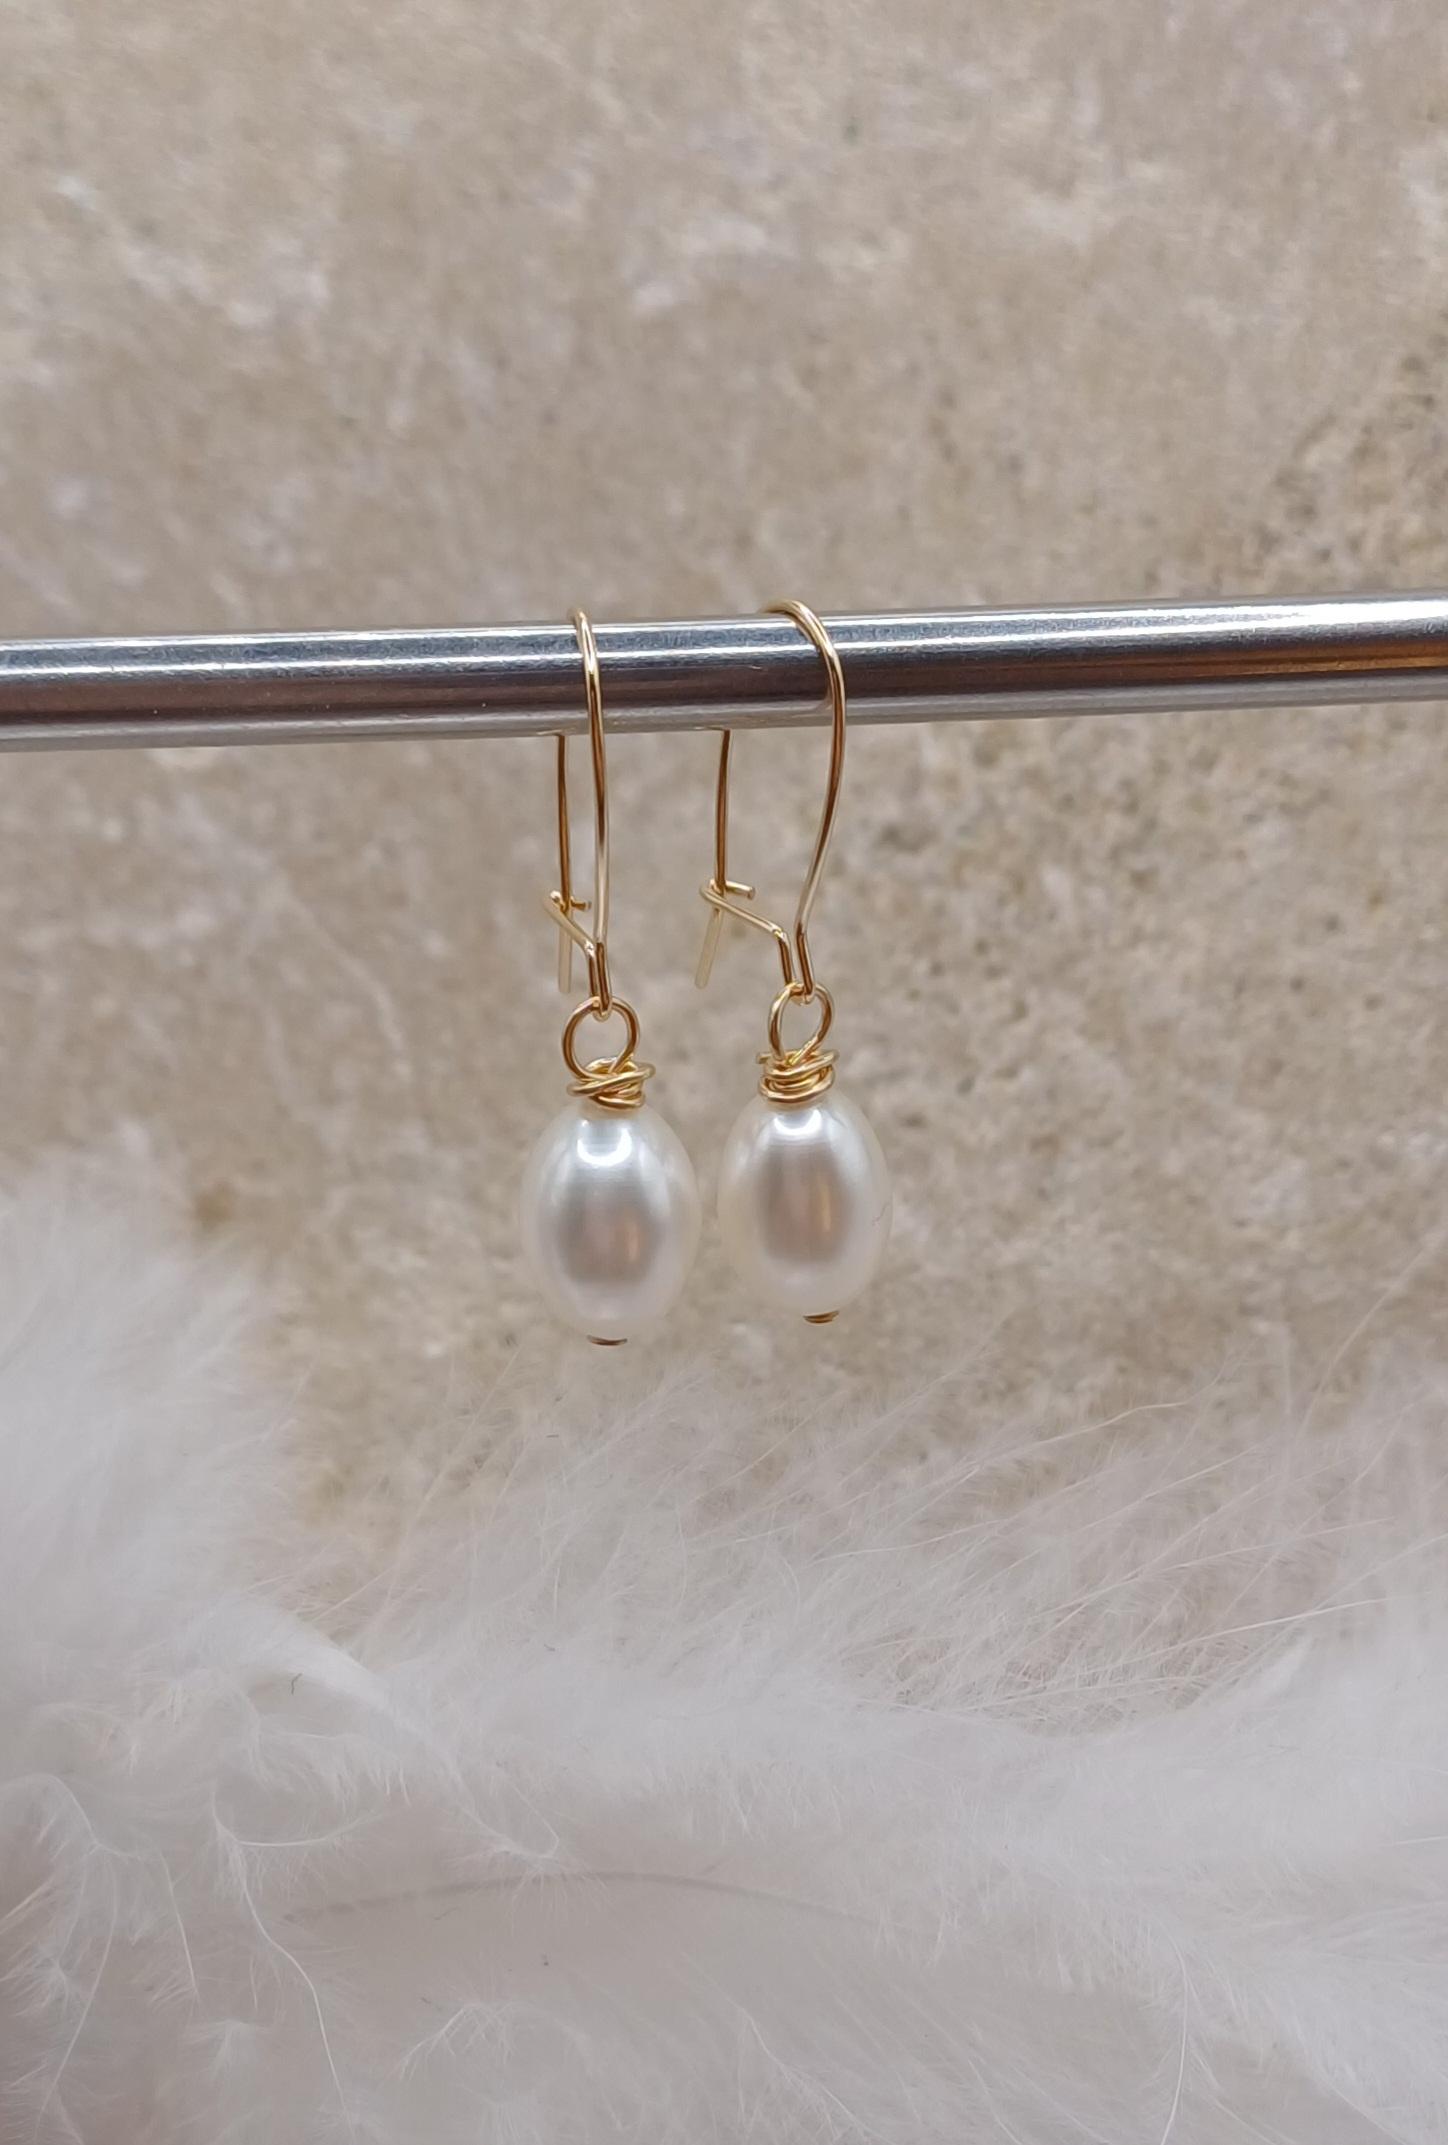 EARRINGS - 14k Gold Filled Pearl Drop Earrings